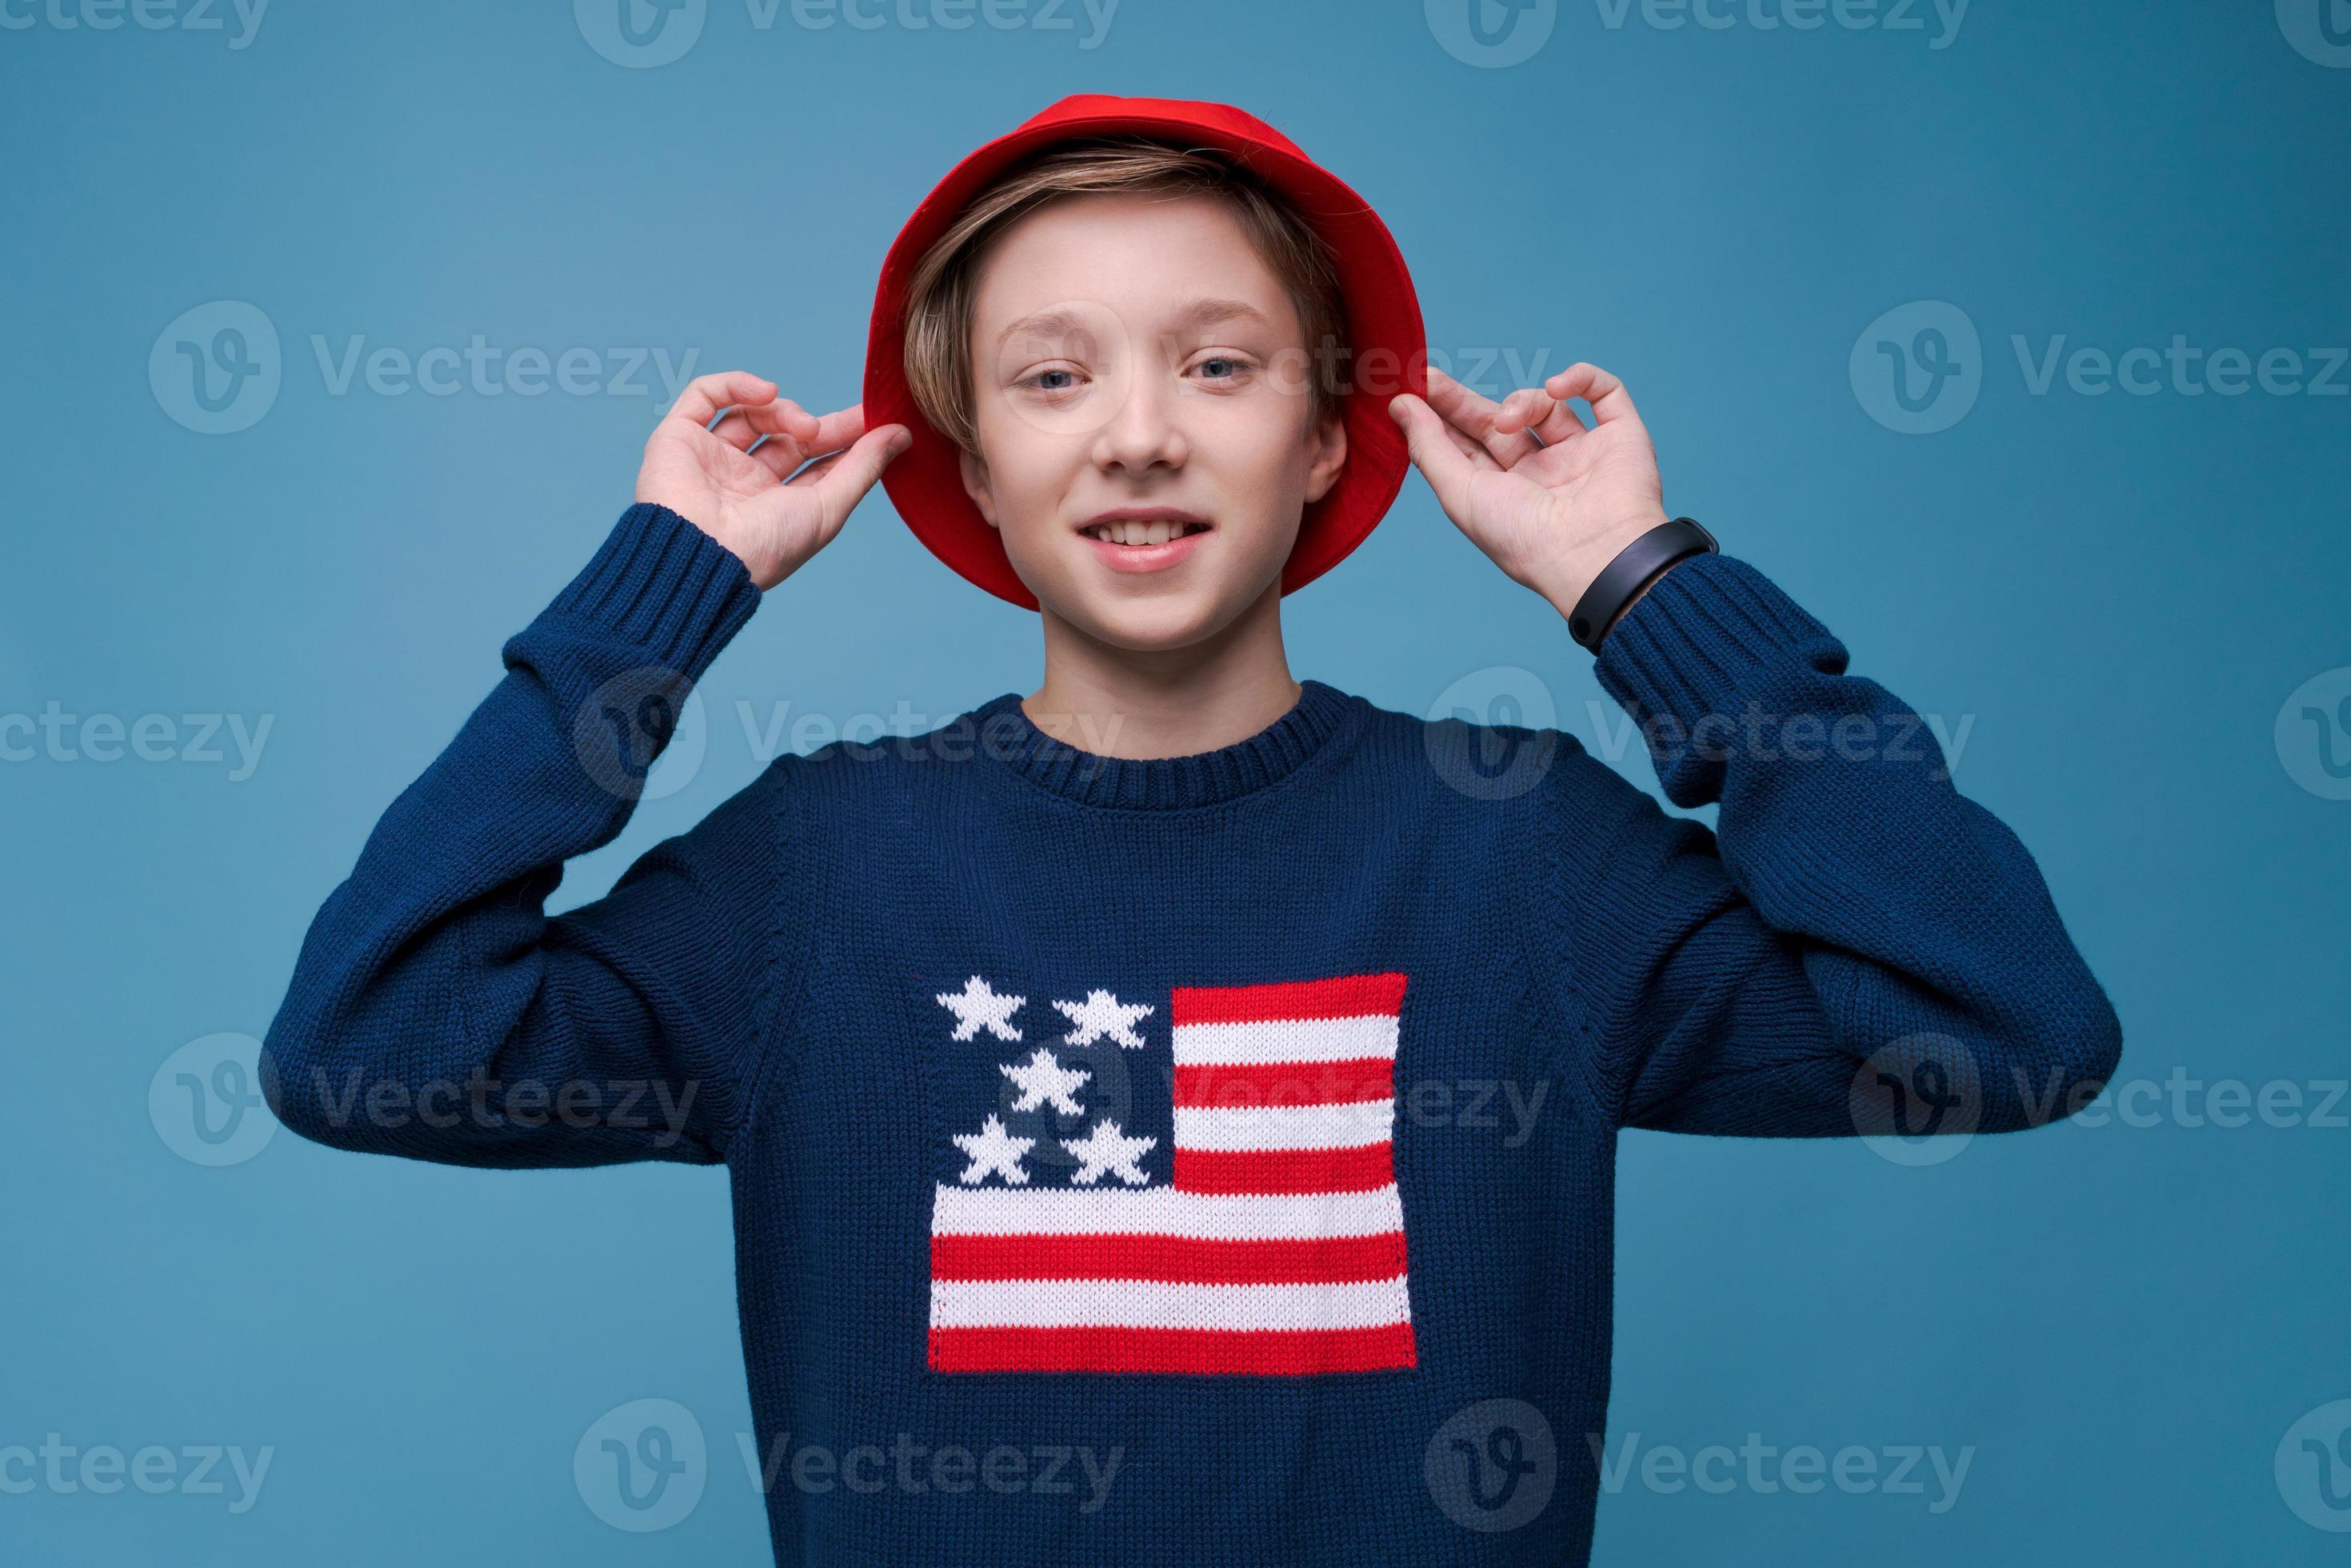 adolescente positivo en suéter azul con bandera de estados unidos y sombrero rojo sonriendo feliz foto